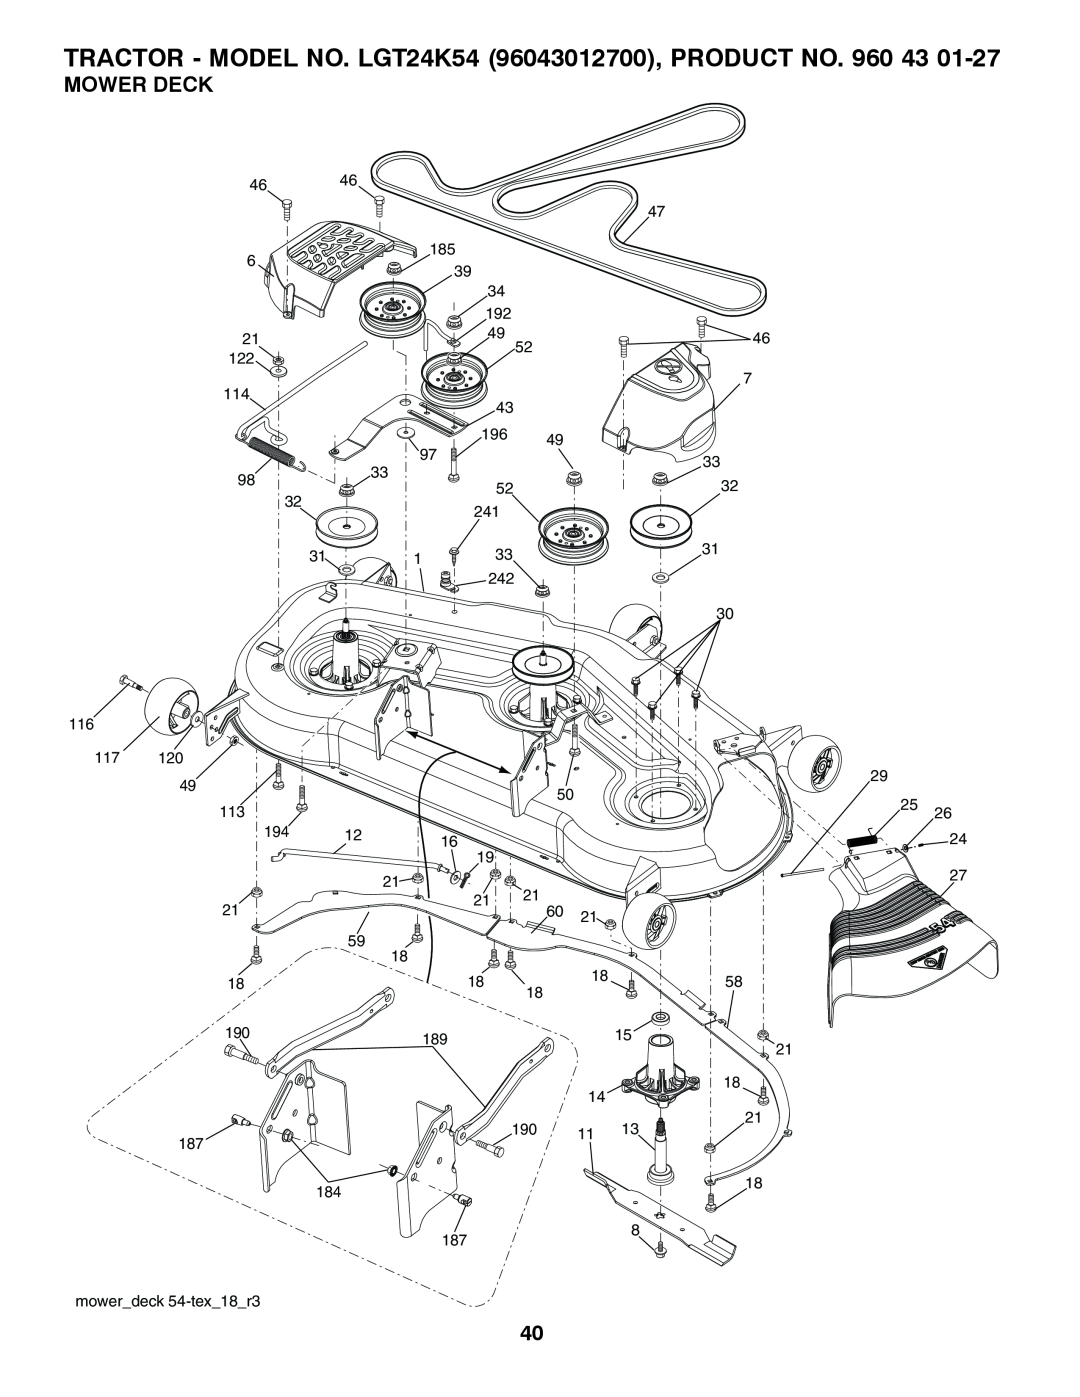 Husqvarna owner manual Mower Deck, TRACTOR - MODEL NO. LGT24K54 96043012700, PRODUCT NO. 960 43 